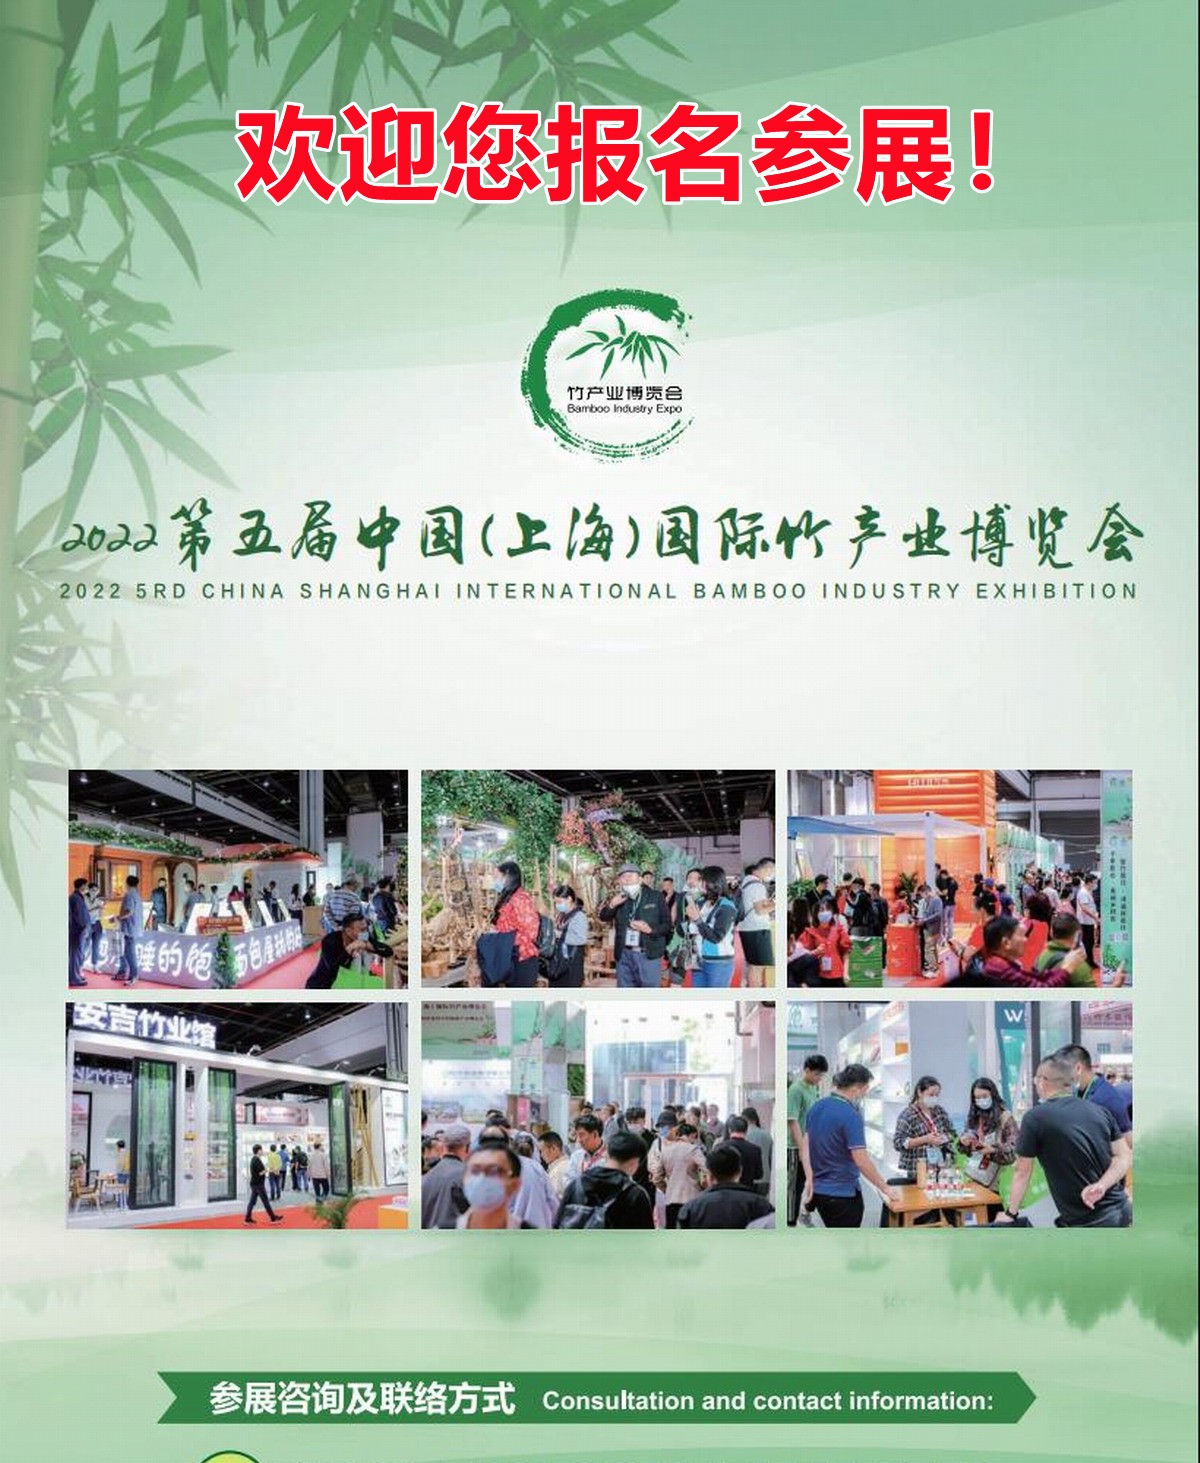 2022第五届中国（上海）国际竹产业博览会,欢迎您报名参展！ 联系电话：15313206870